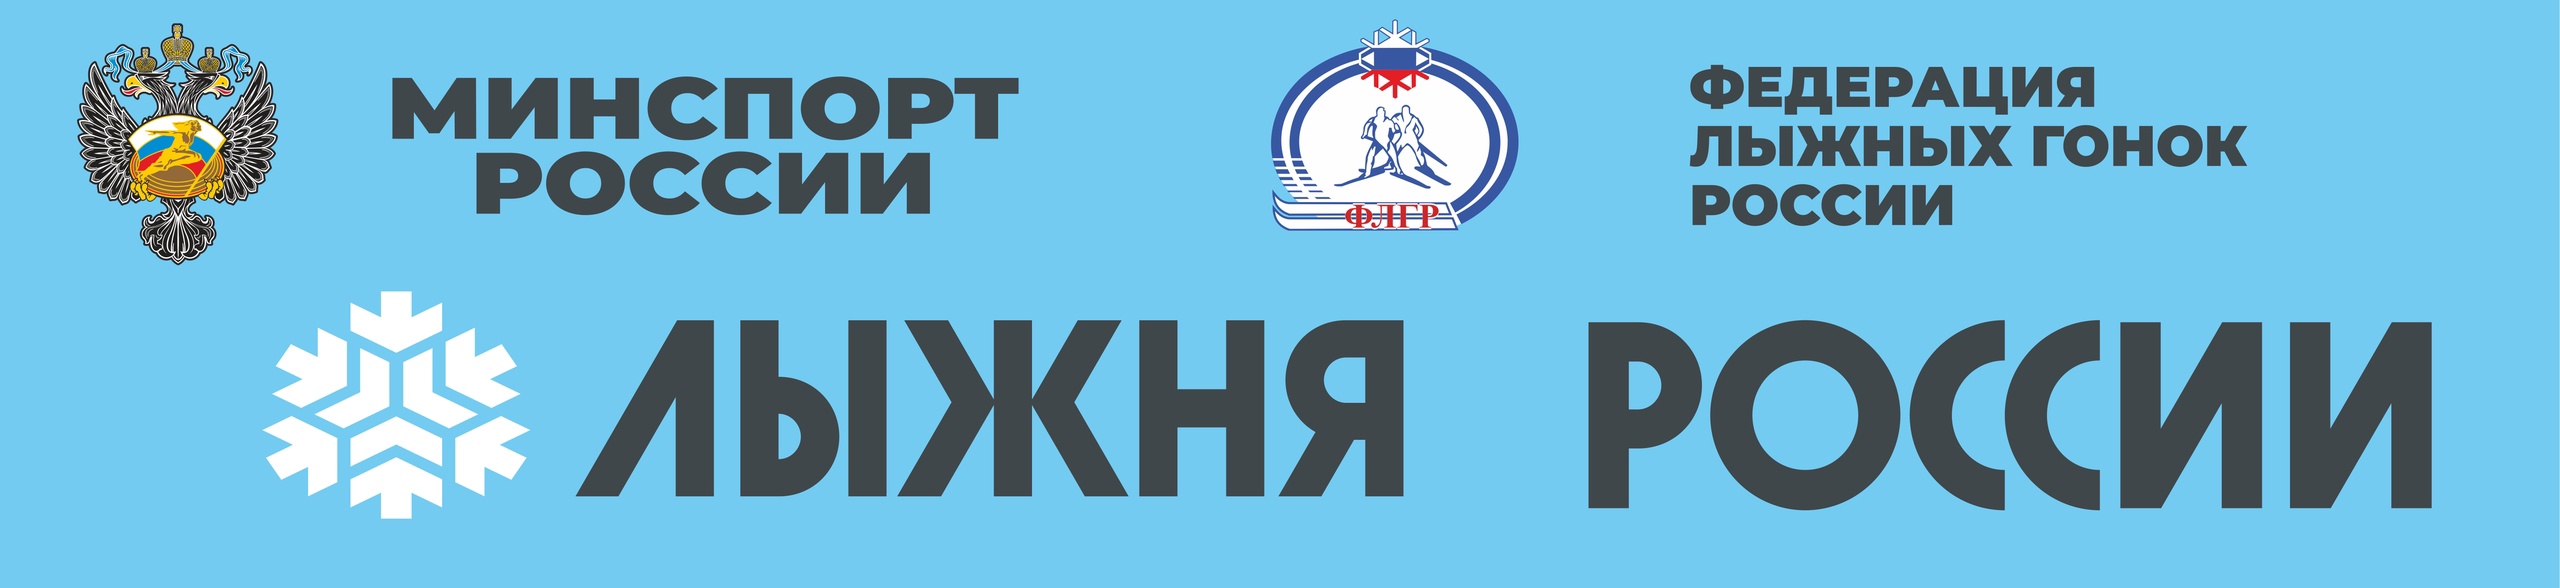 Лыжня России логотип. Грамота Лыжня России.